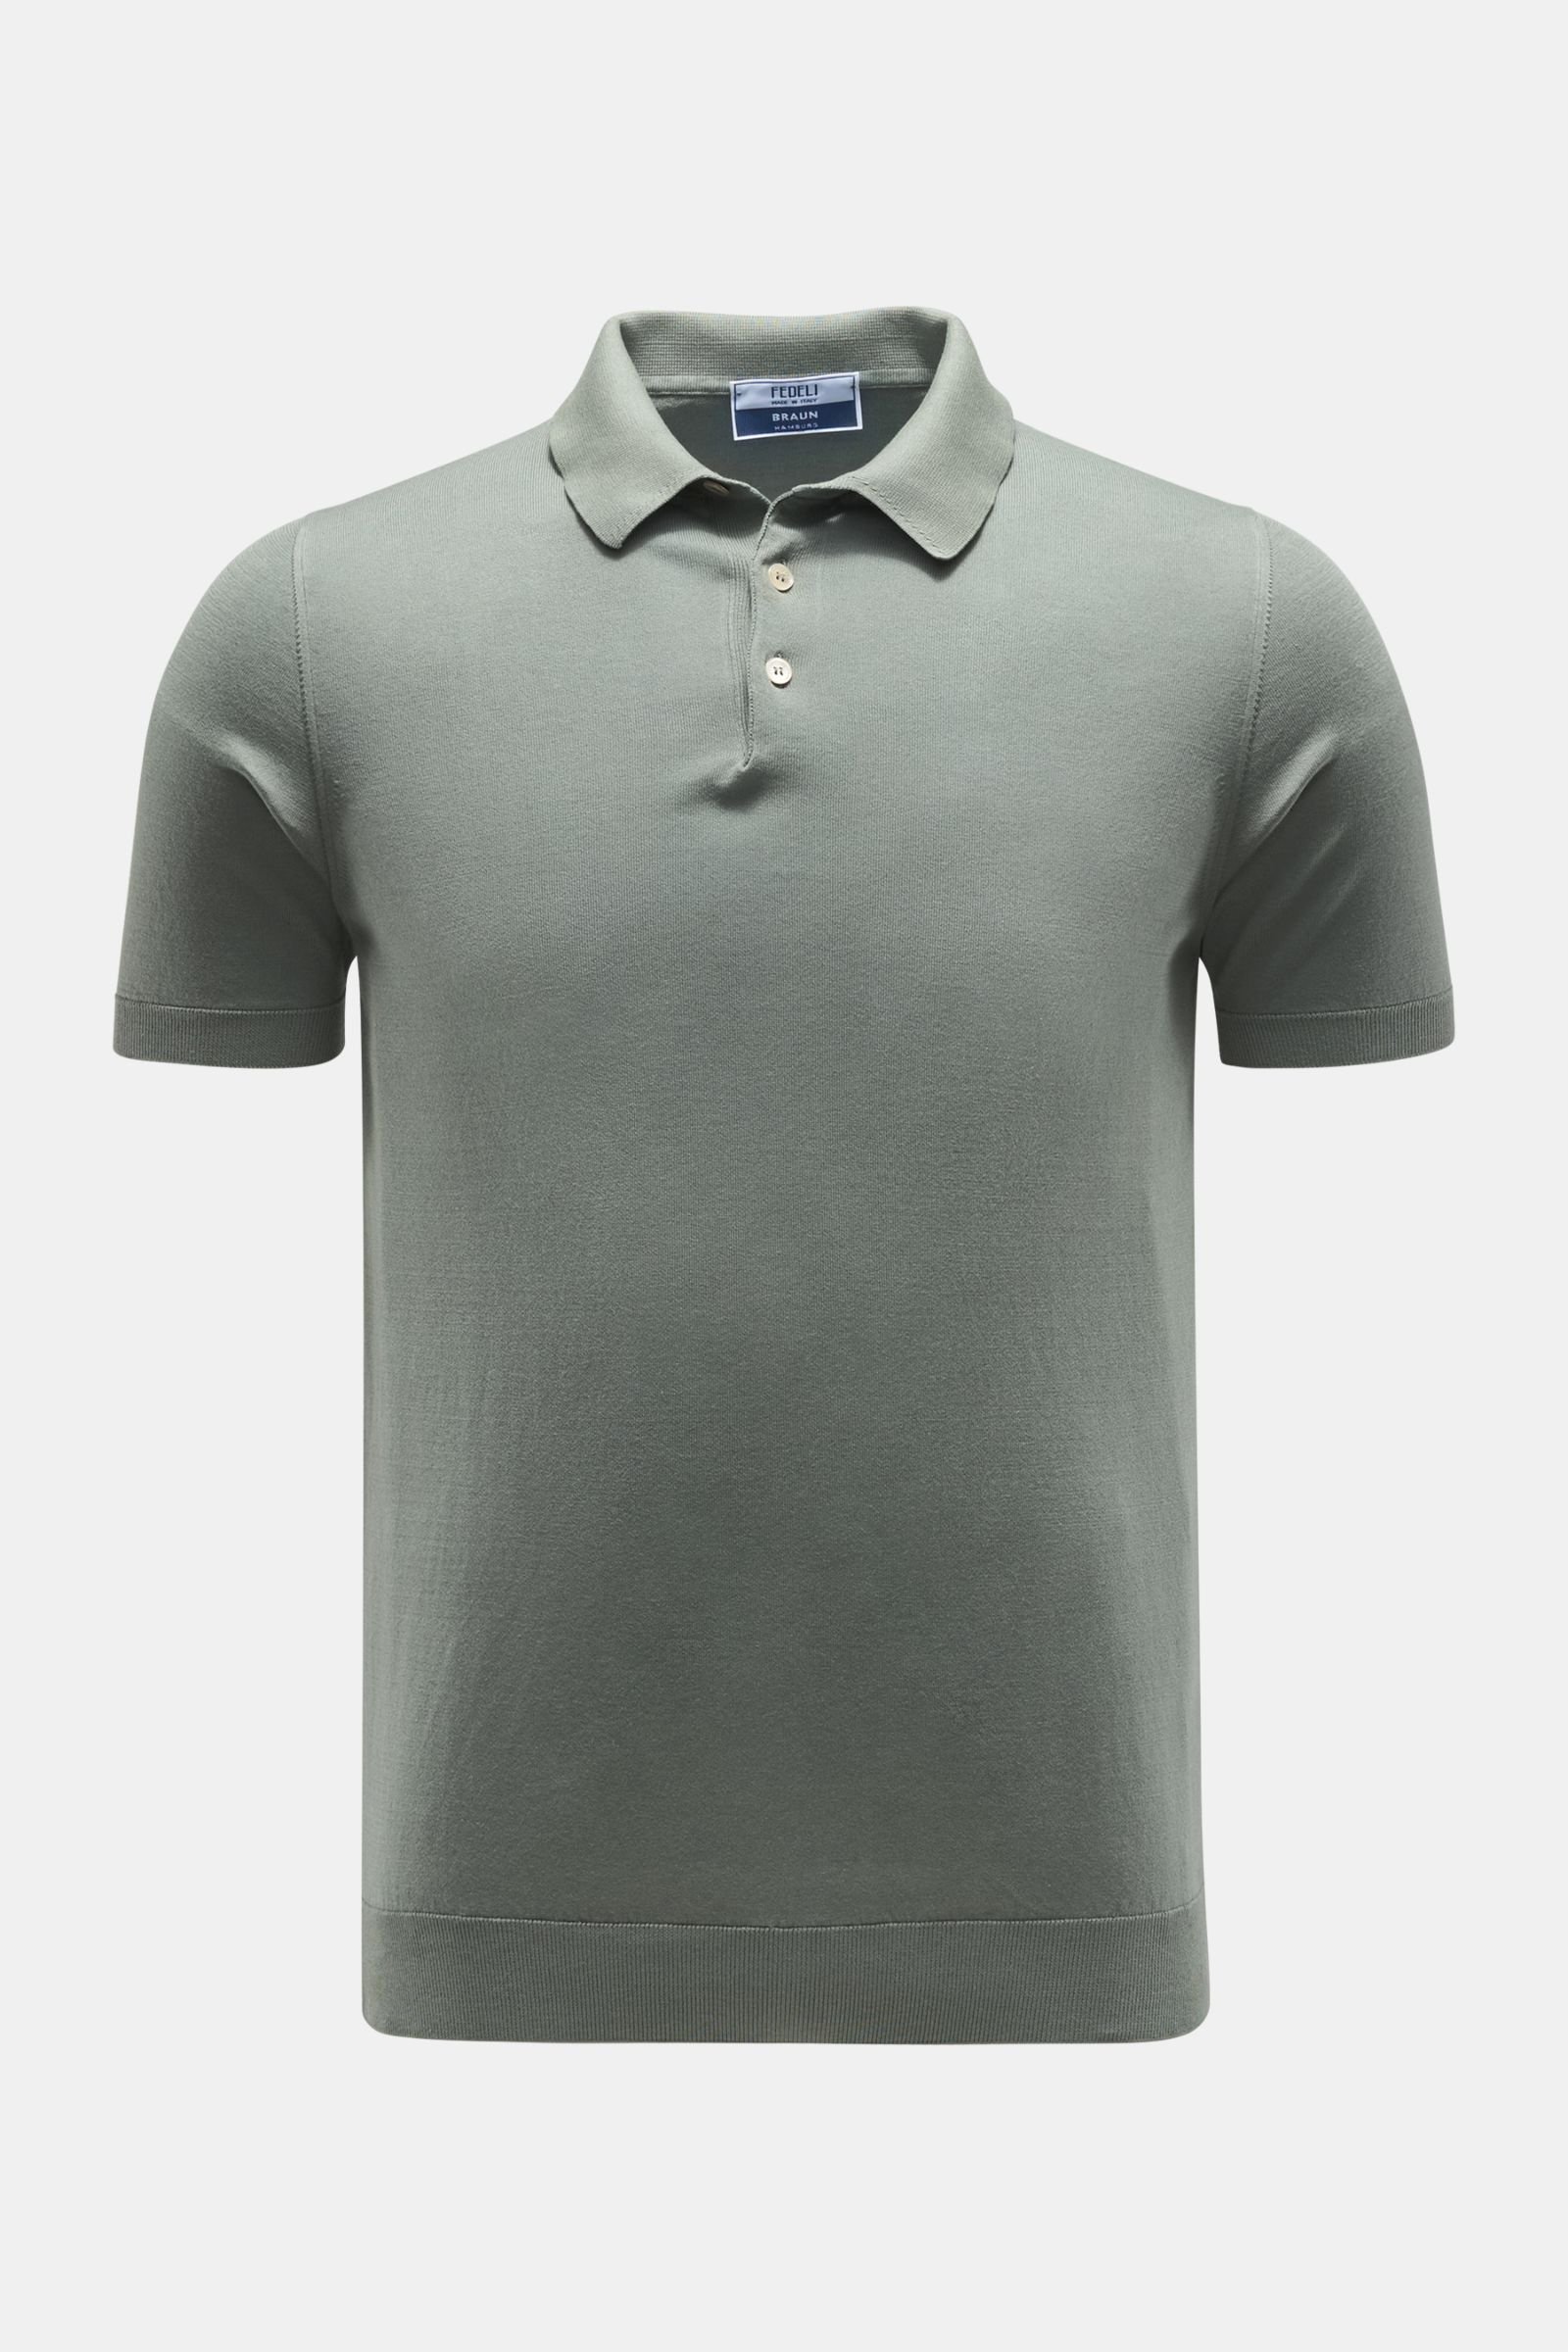 Jersey-Poloshirt 'Sportman' graugrün